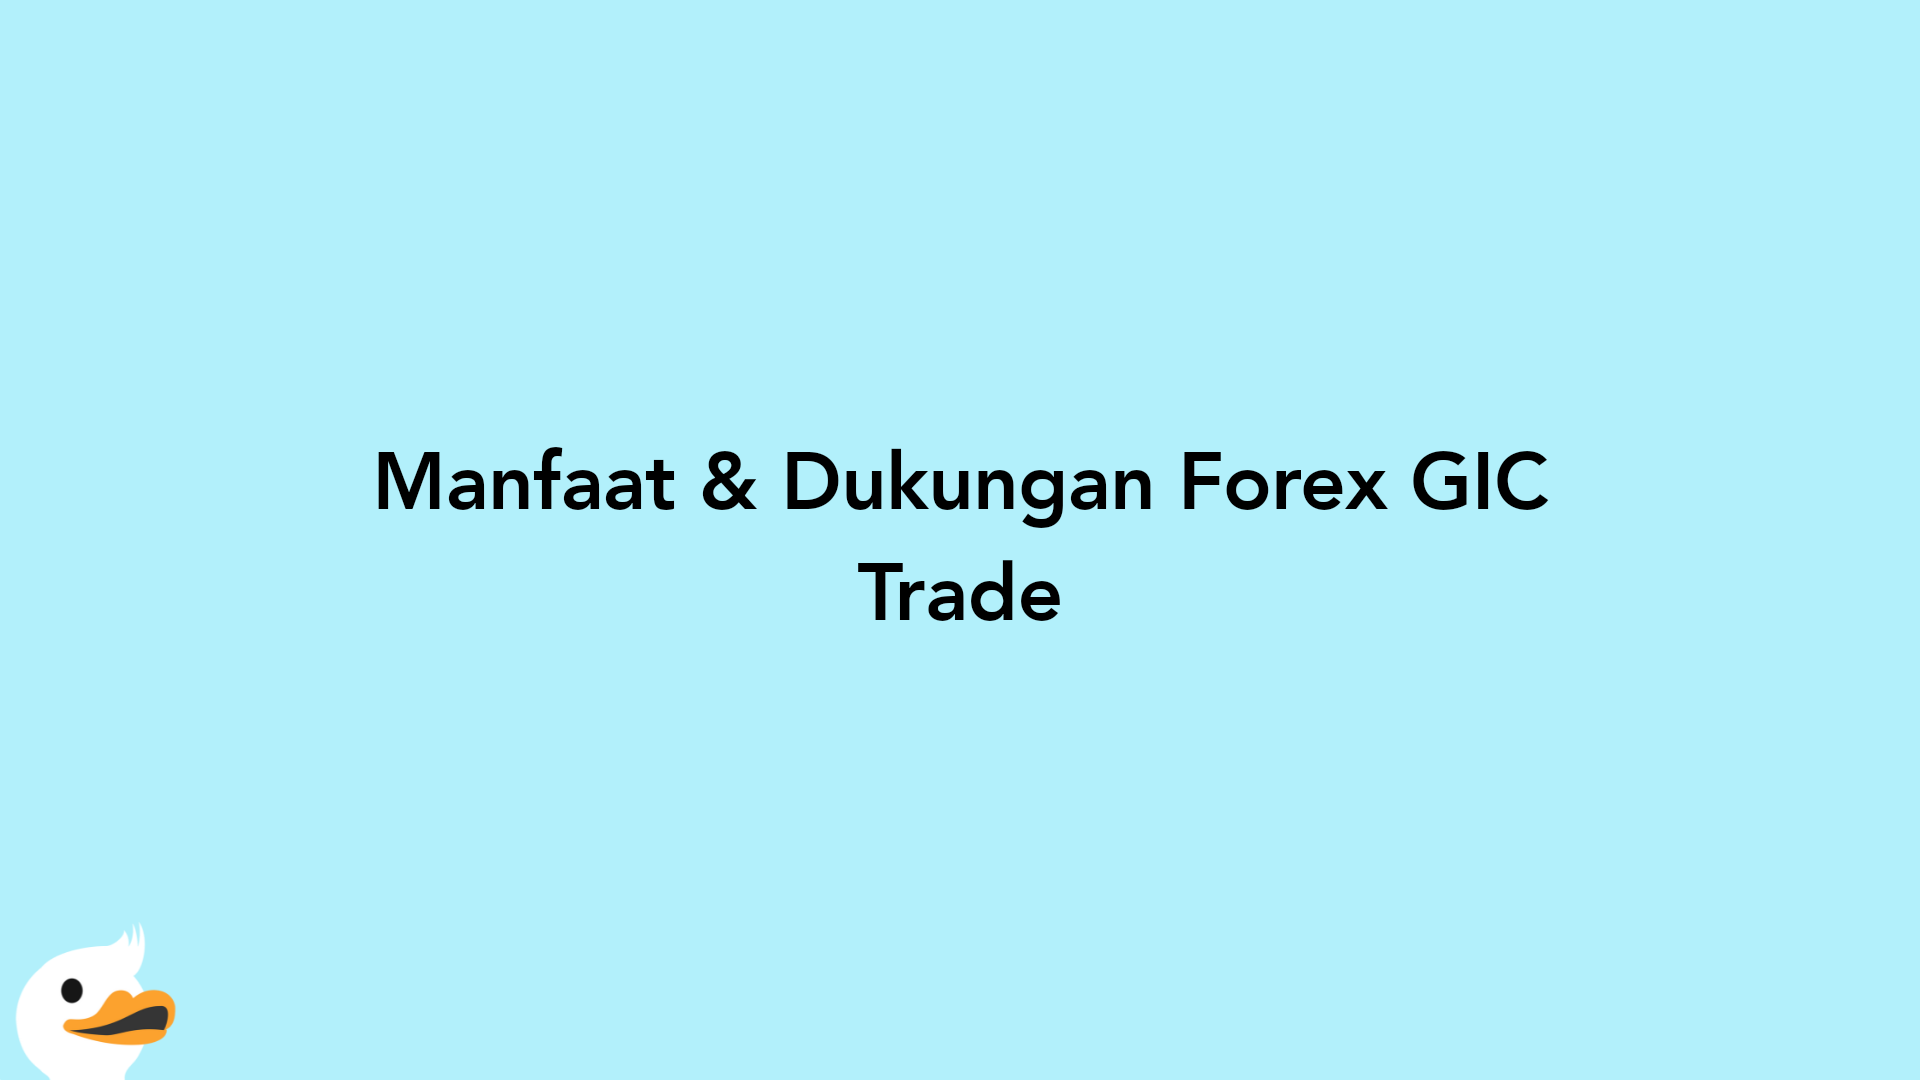 Manfaat & Dukungan Forex GIC Trade